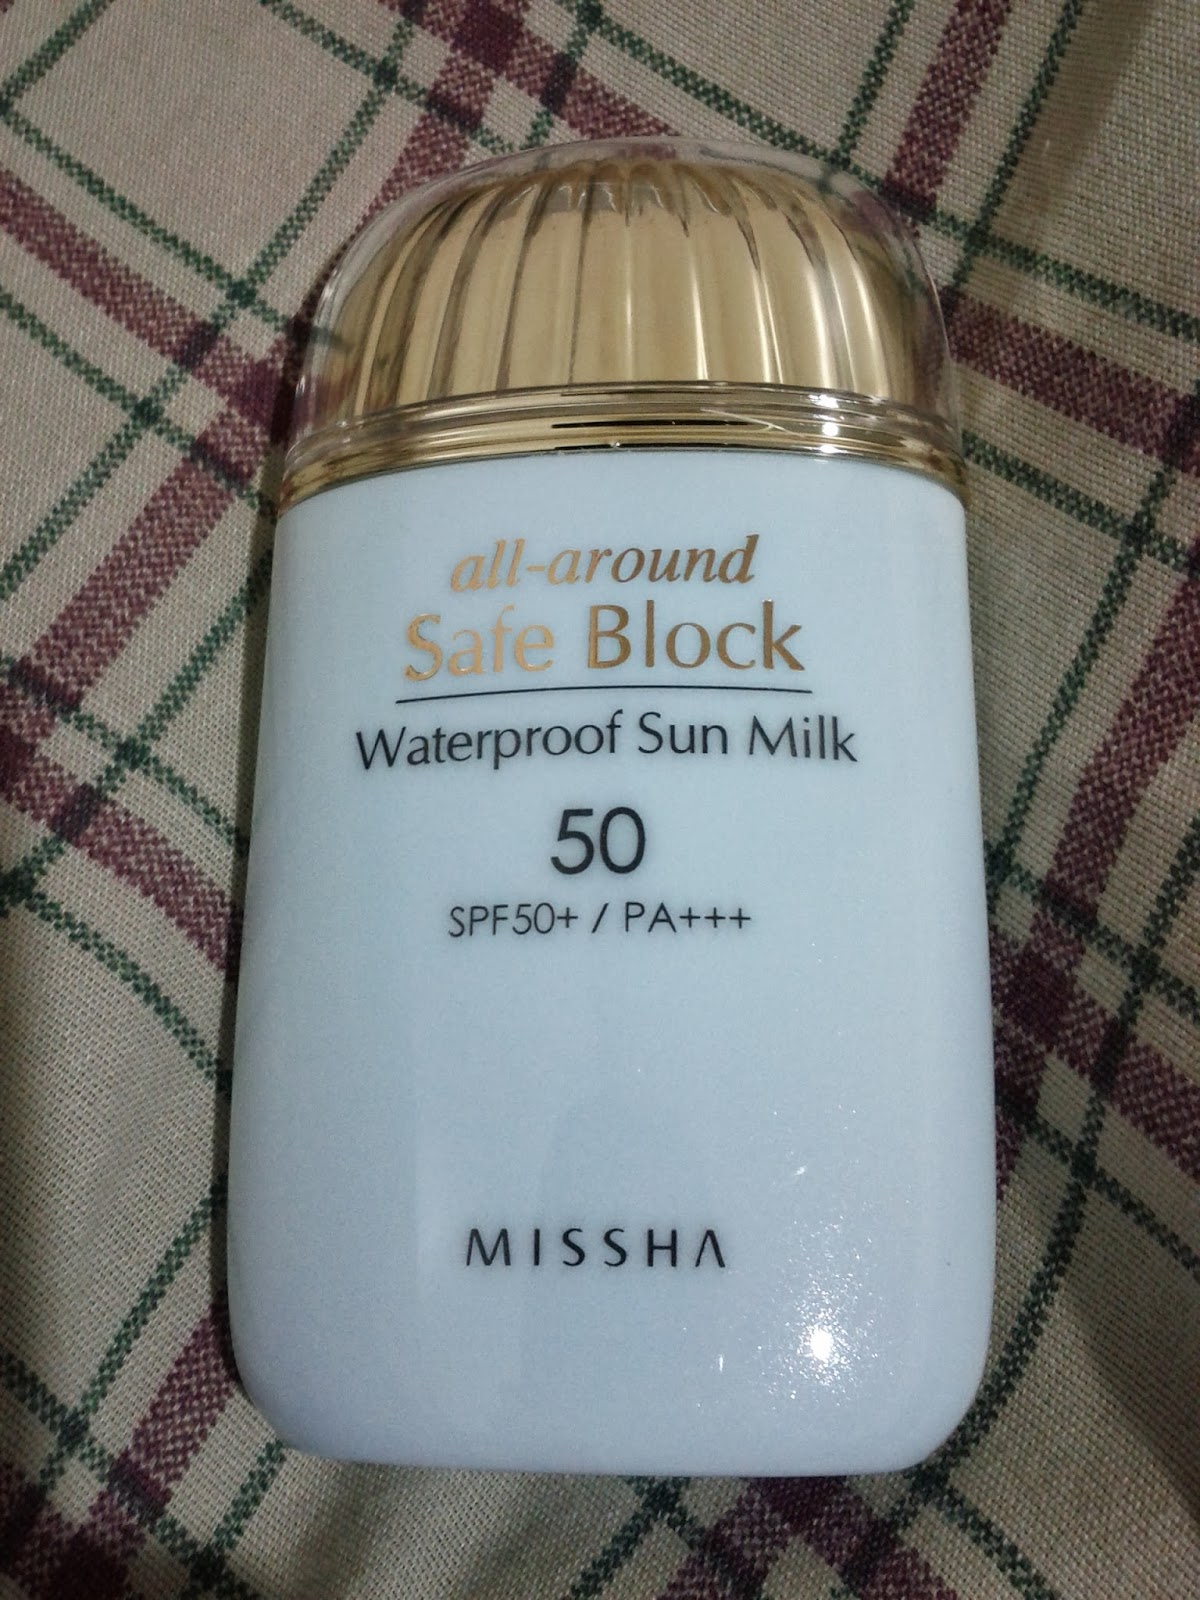 missha waterproof sun milk review